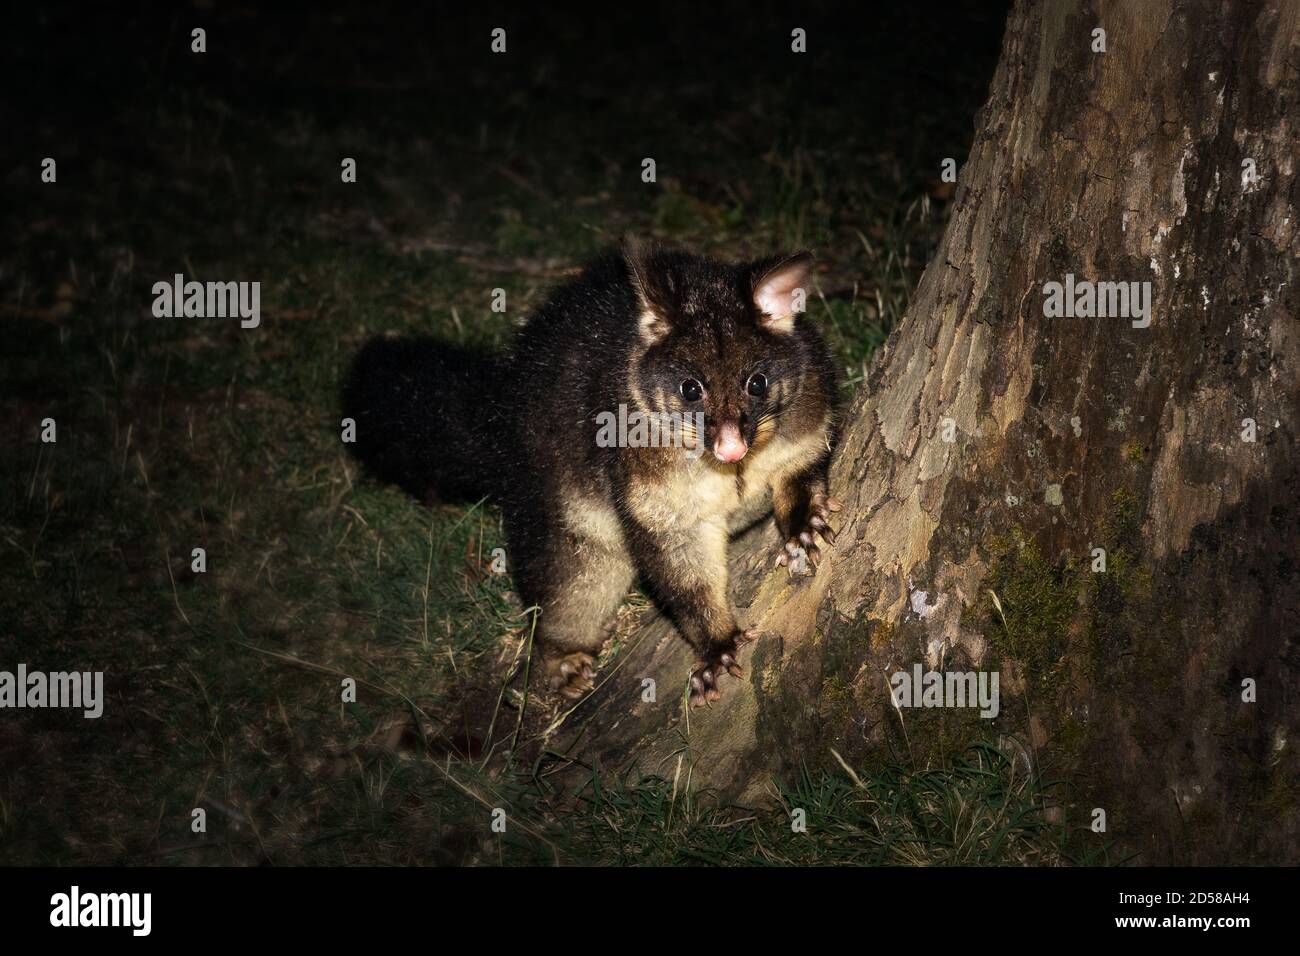 Brushtail Possum foraging at night. Stock Photo